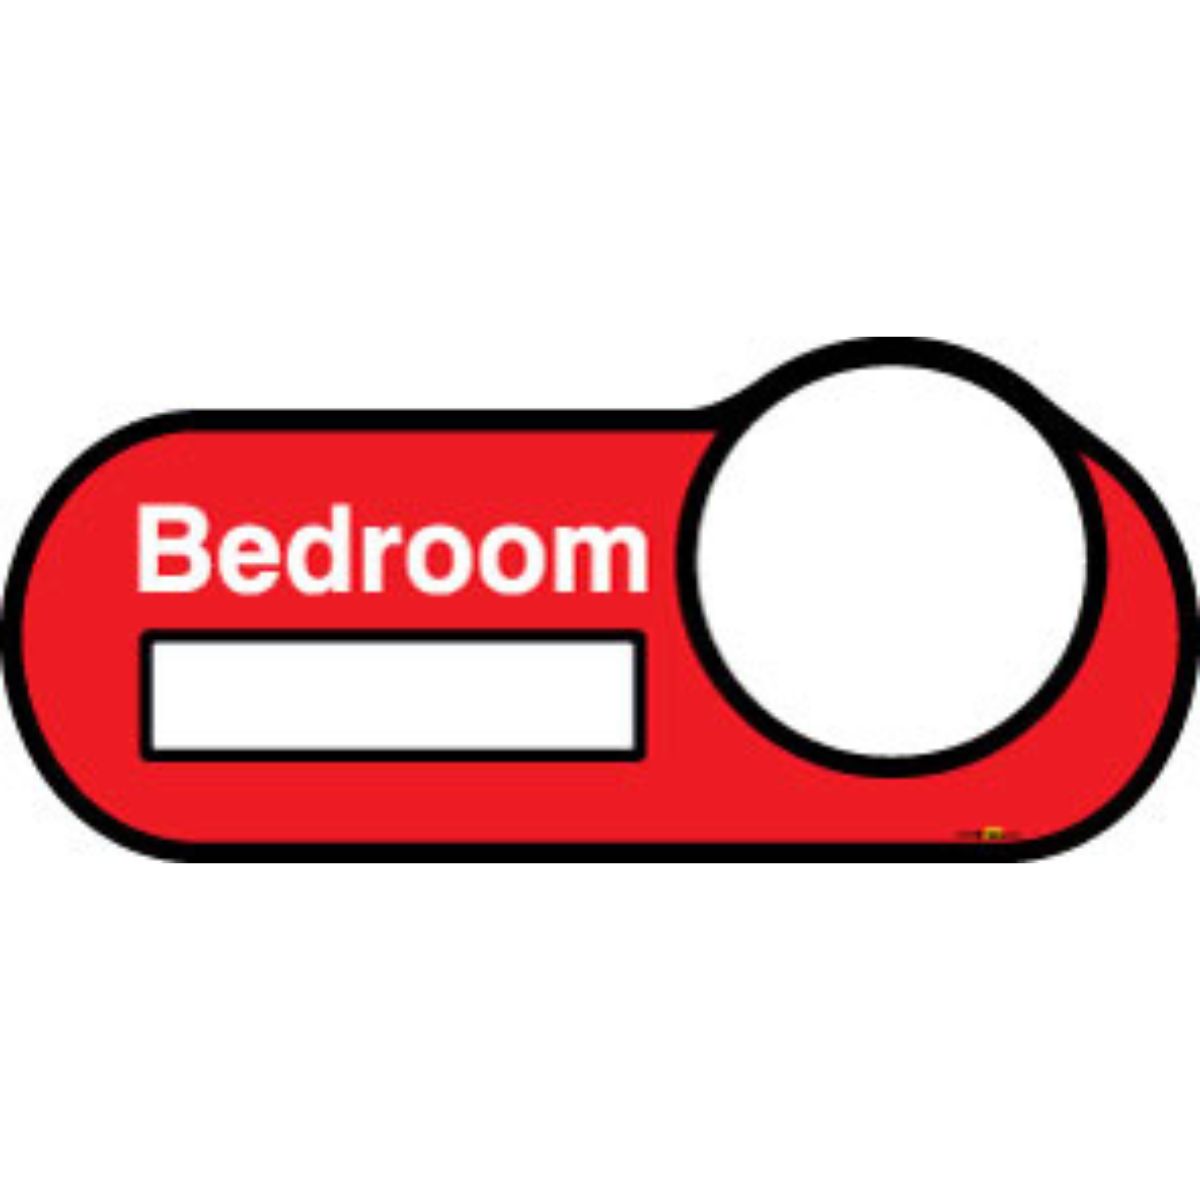 Bedroom Interchangeable Sign, 30cm